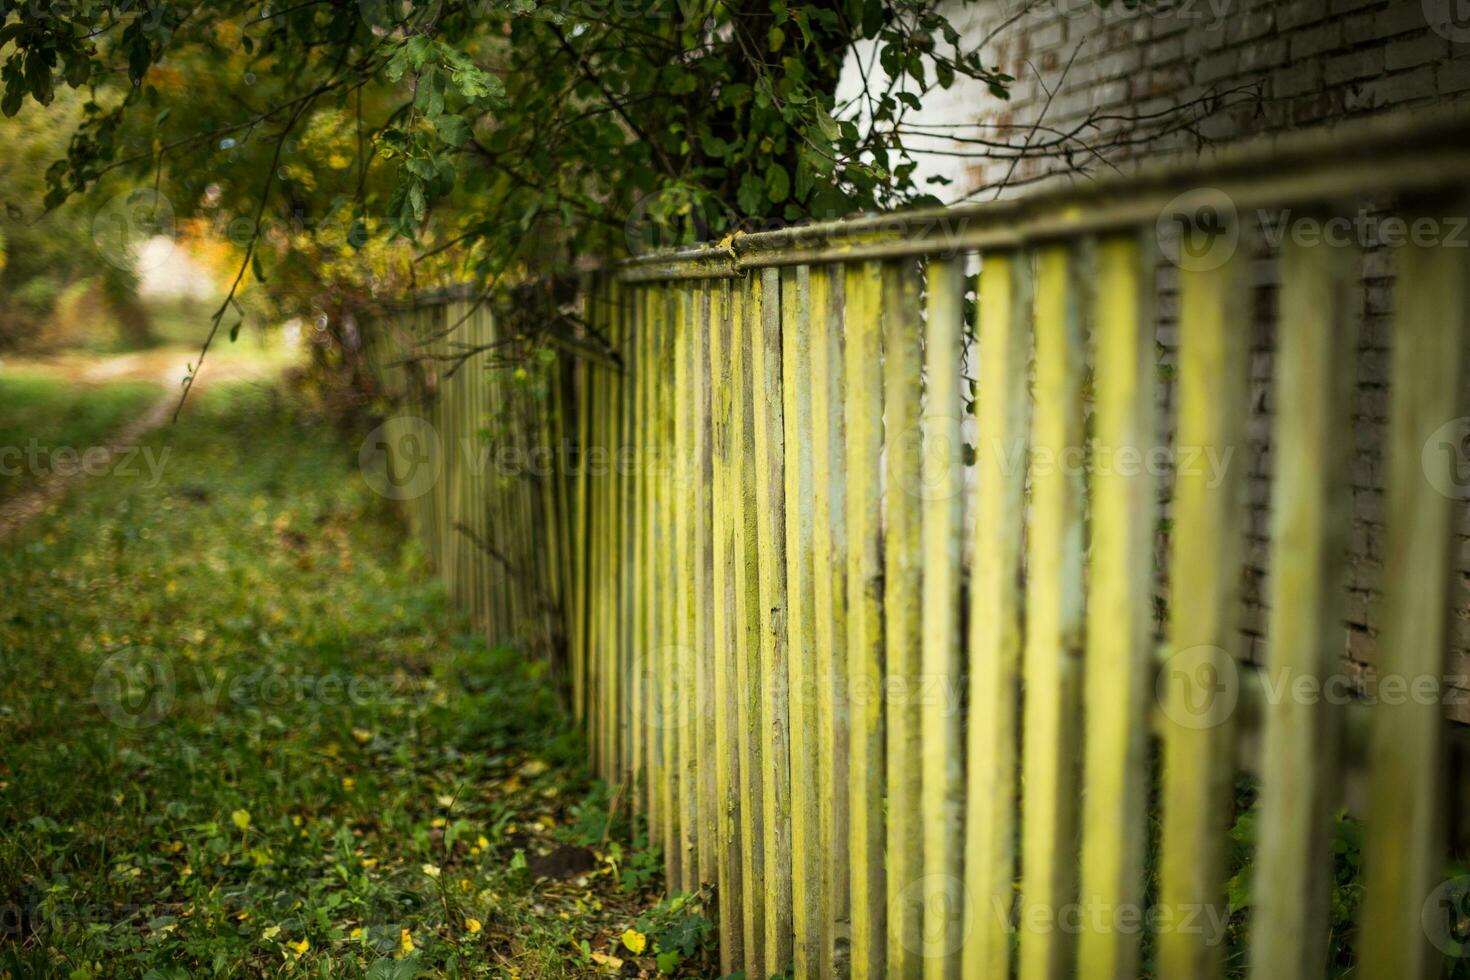 oud houten groen schutting. herfst weg in de dorp. foto